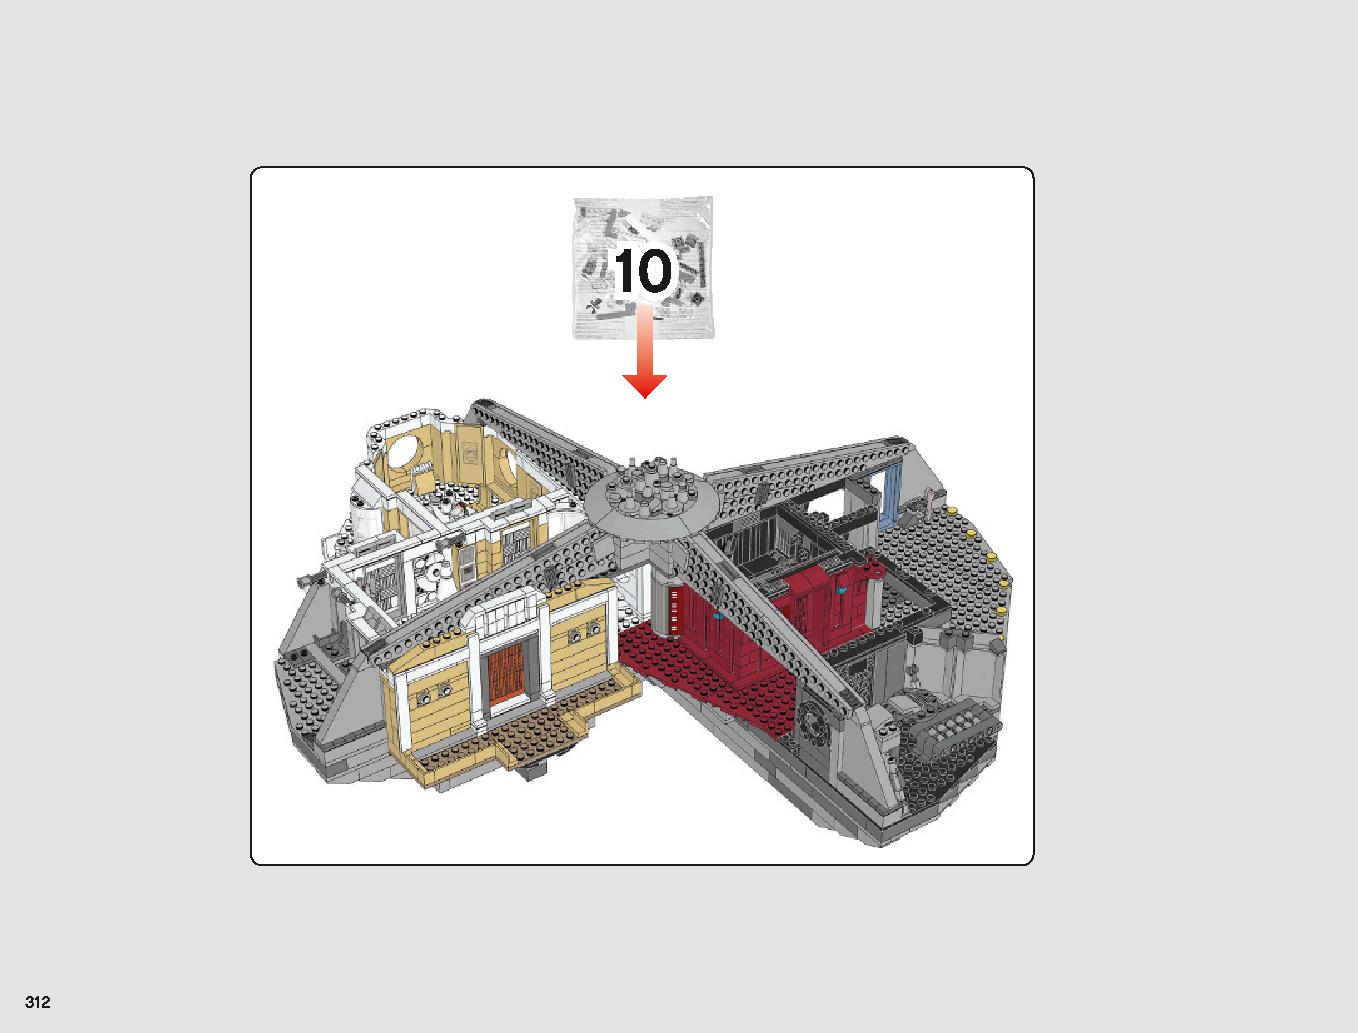 クラウド・シティ 75222 レゴの商品情報 レゴの説明書・組立方法 312 page